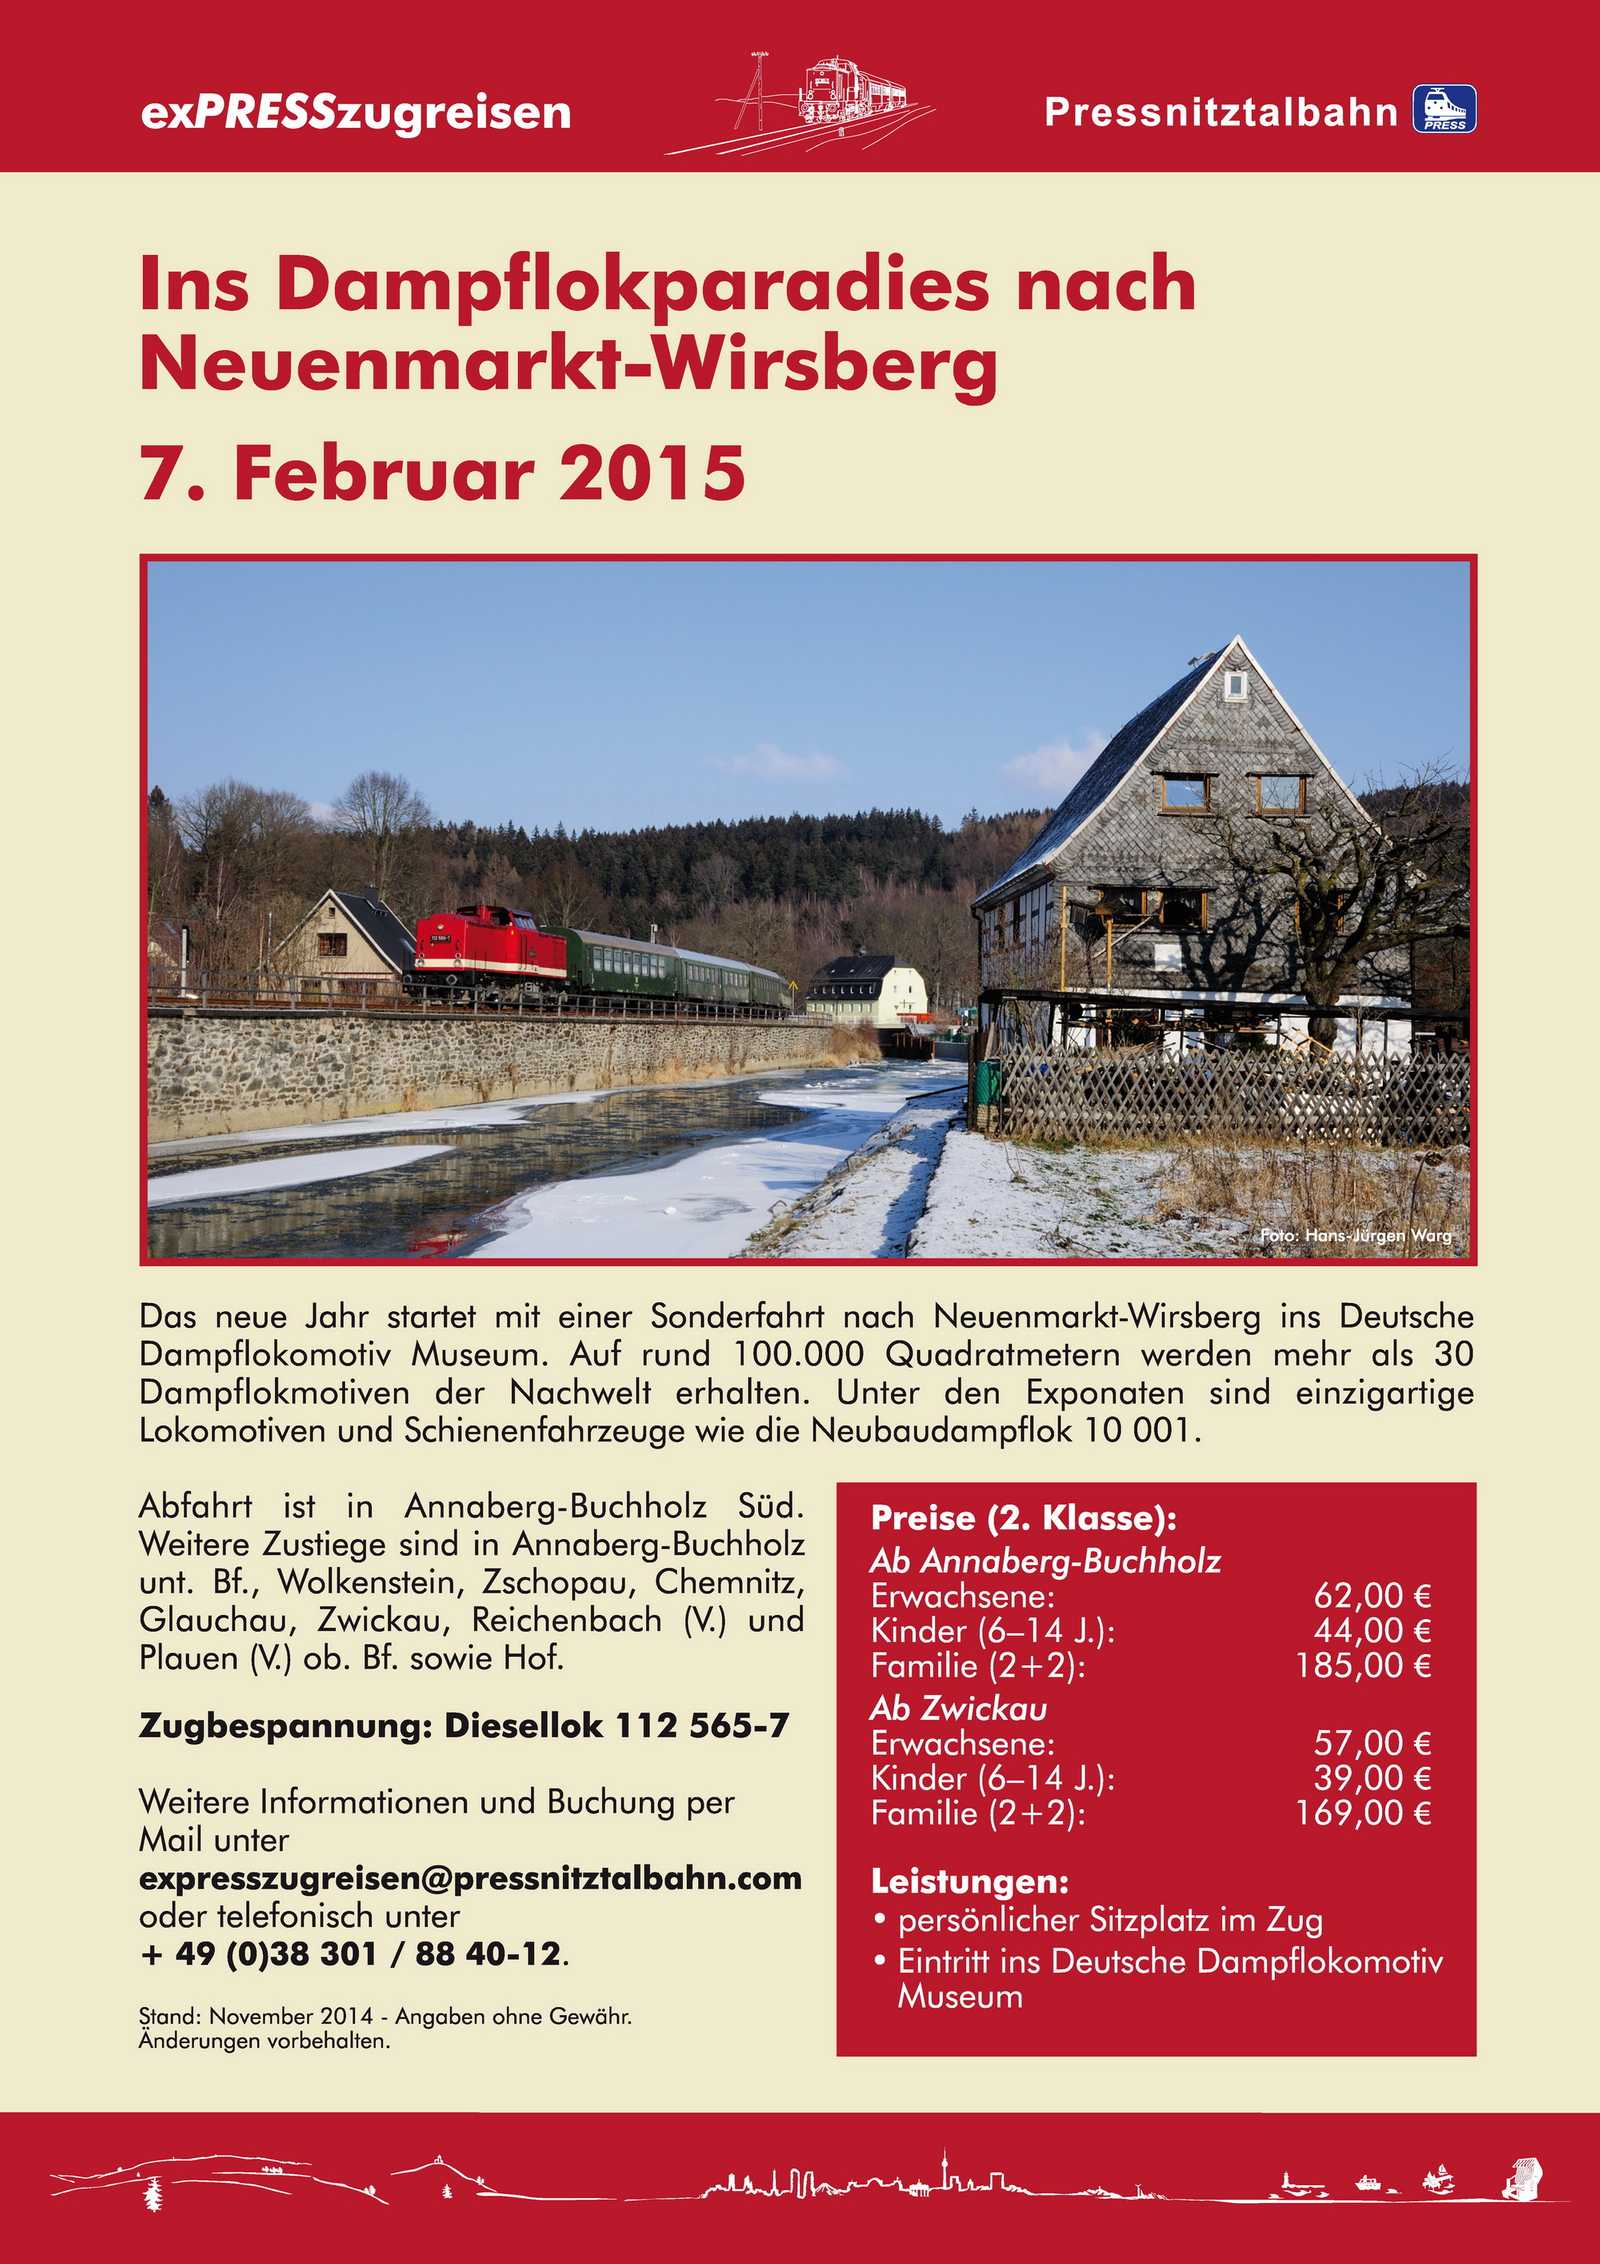 Veranstaltungsankündigung: 7. Februar 2015 - Ins Dampflokparadies nach Neuenmarkt-Wirsberg